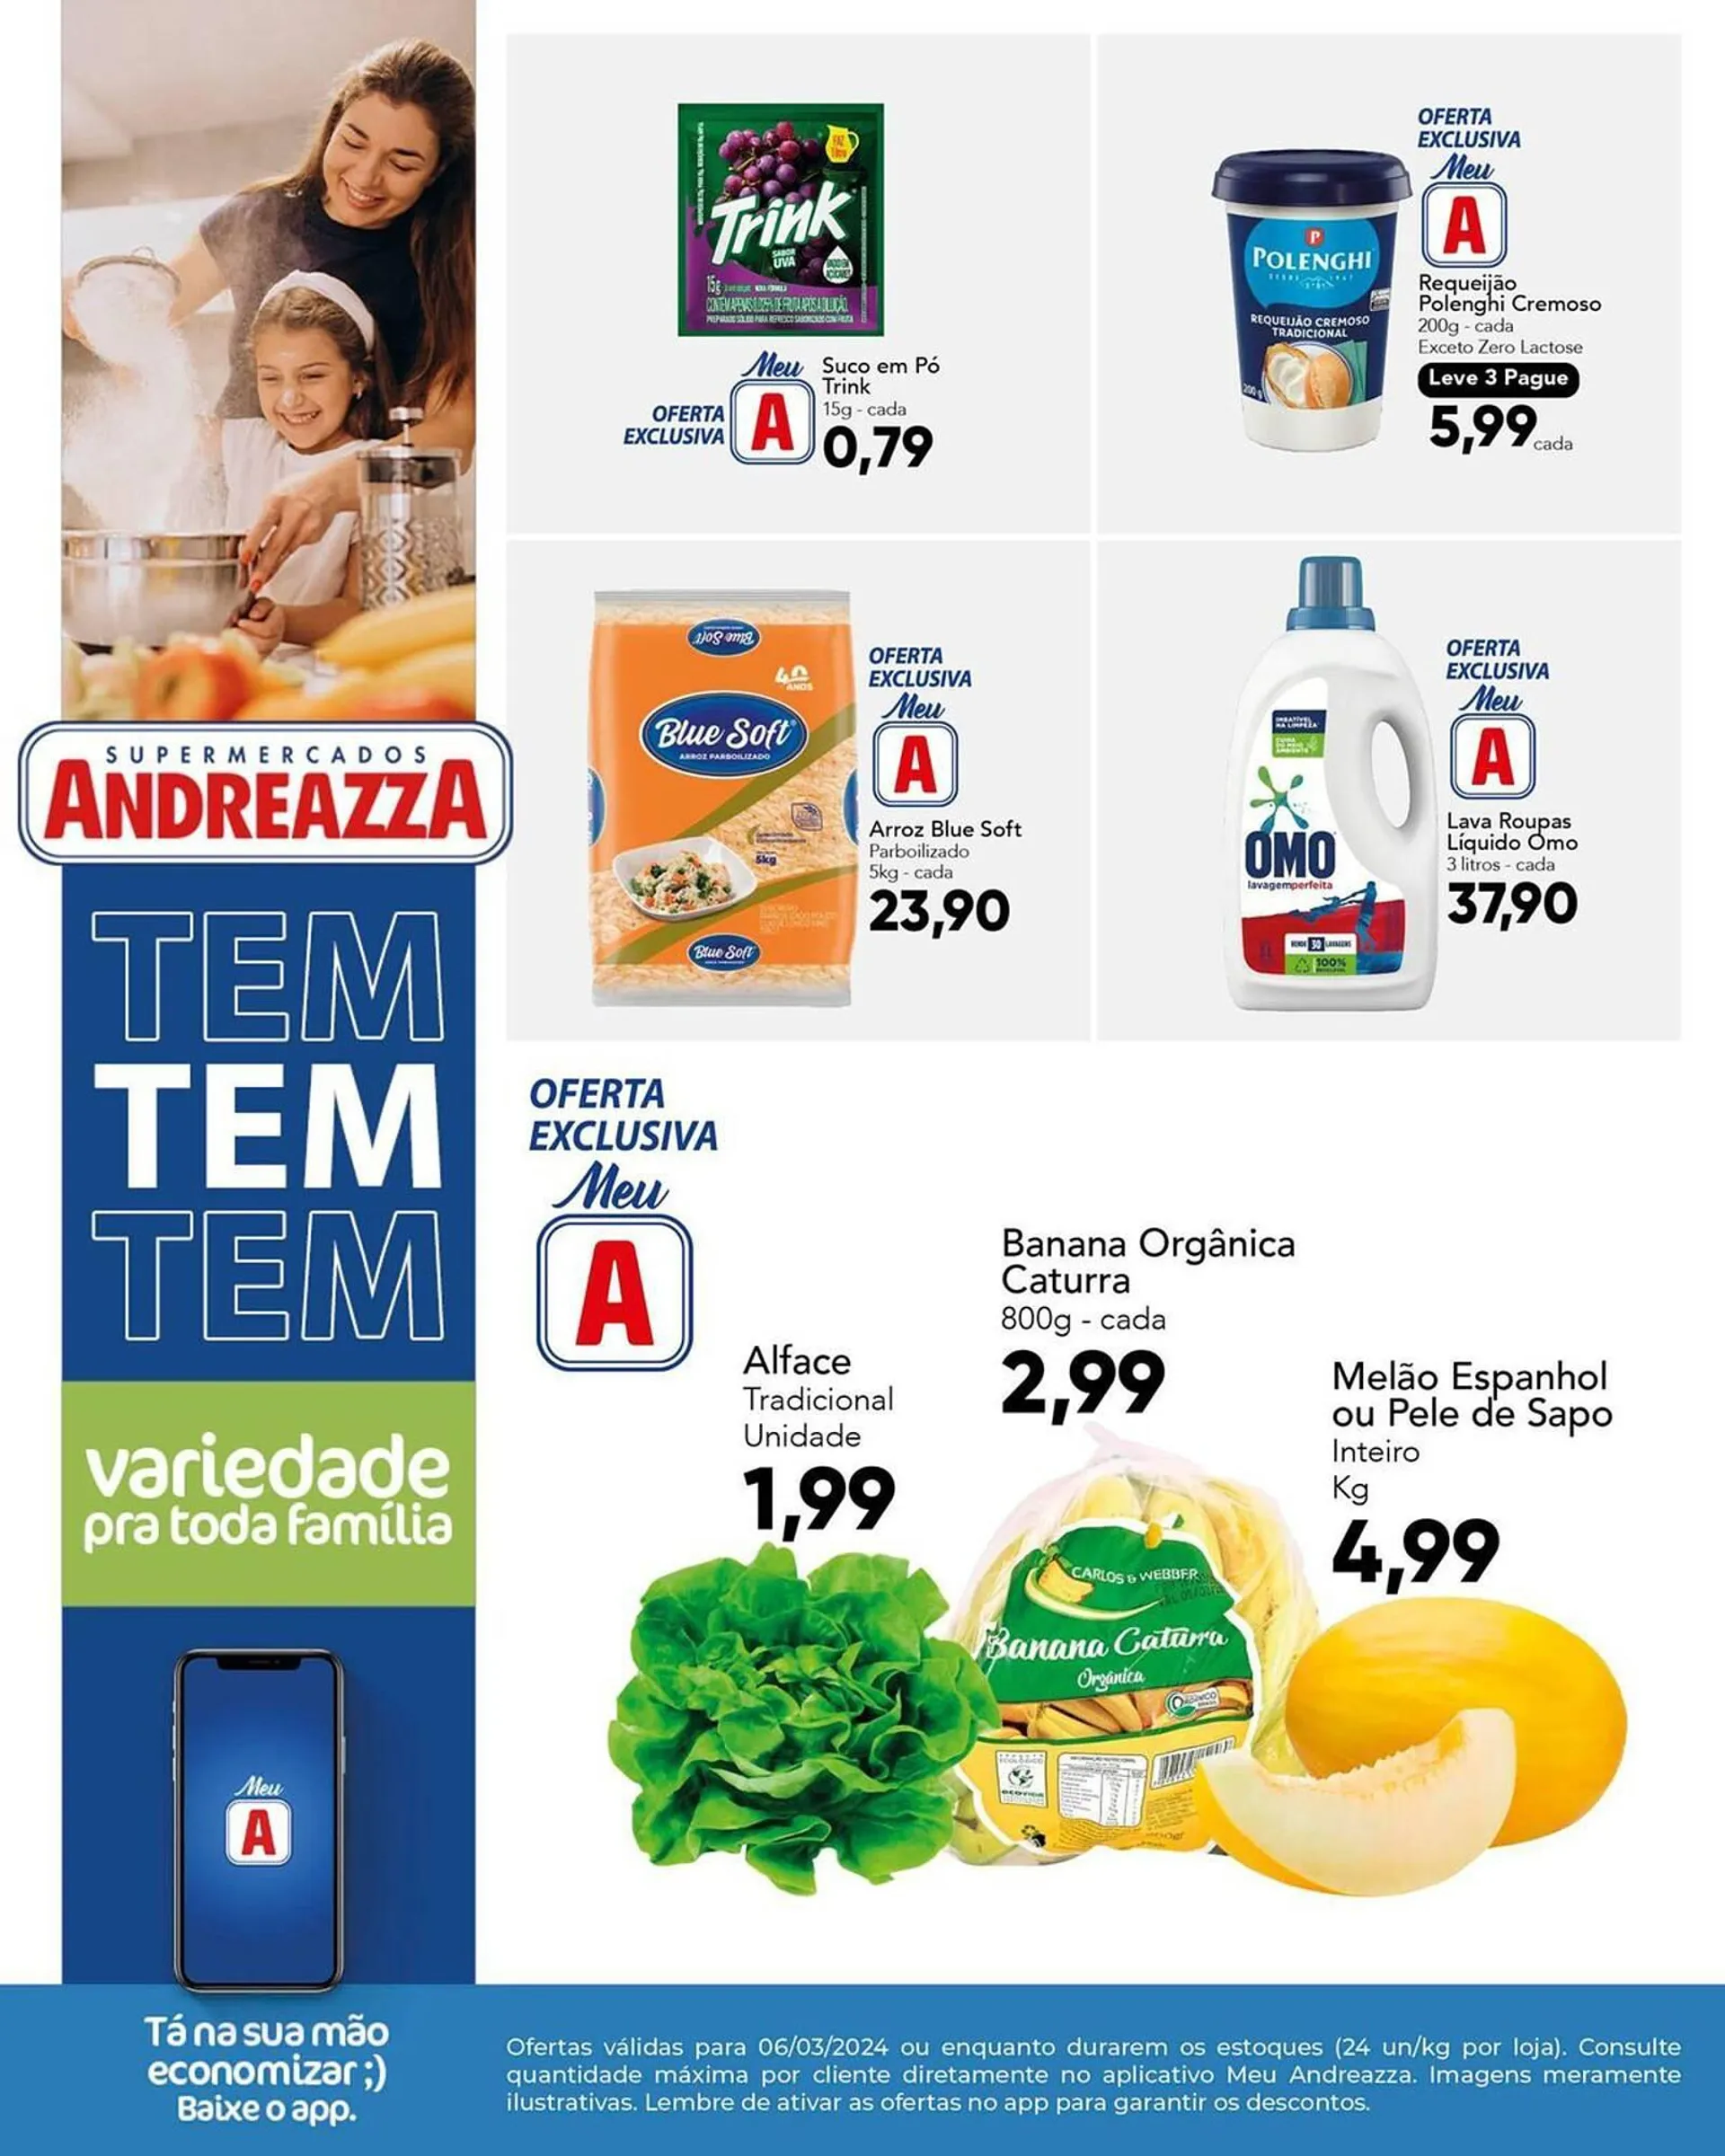 Encarte de Catálogo Supermercados Andreazza 6 de março até 6 de março 2024 - Pagina 1